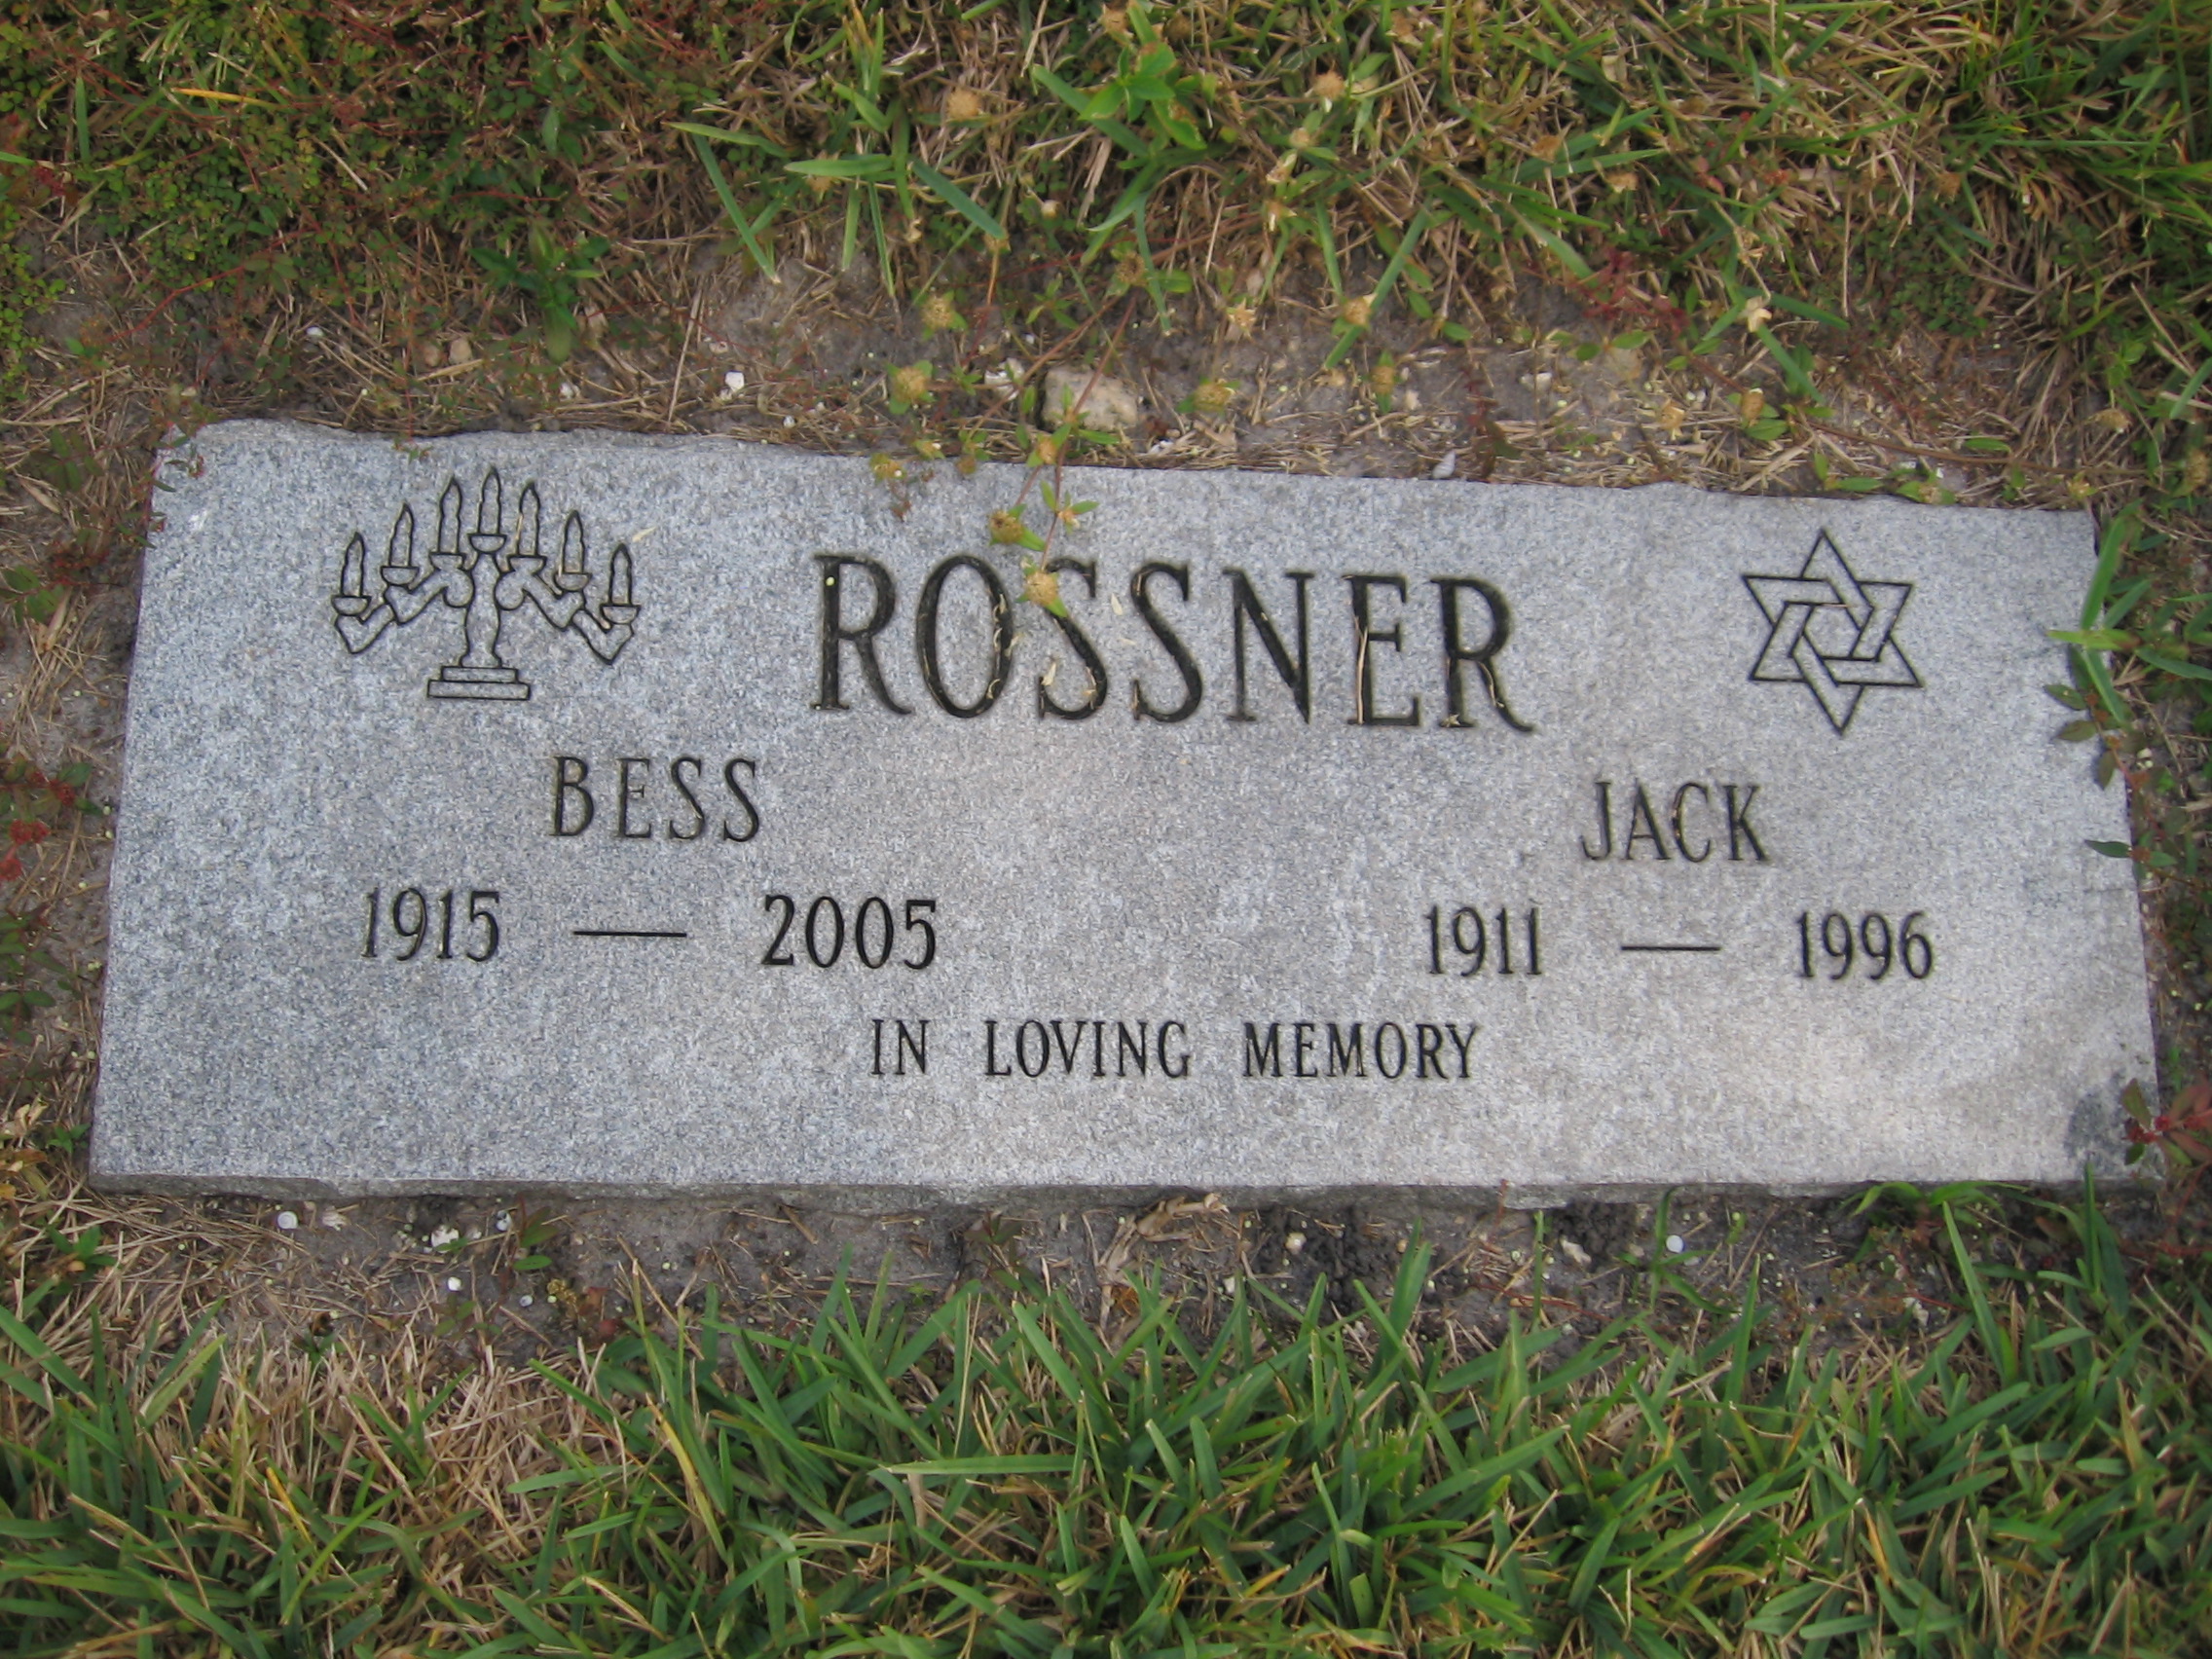 Jack Rossner